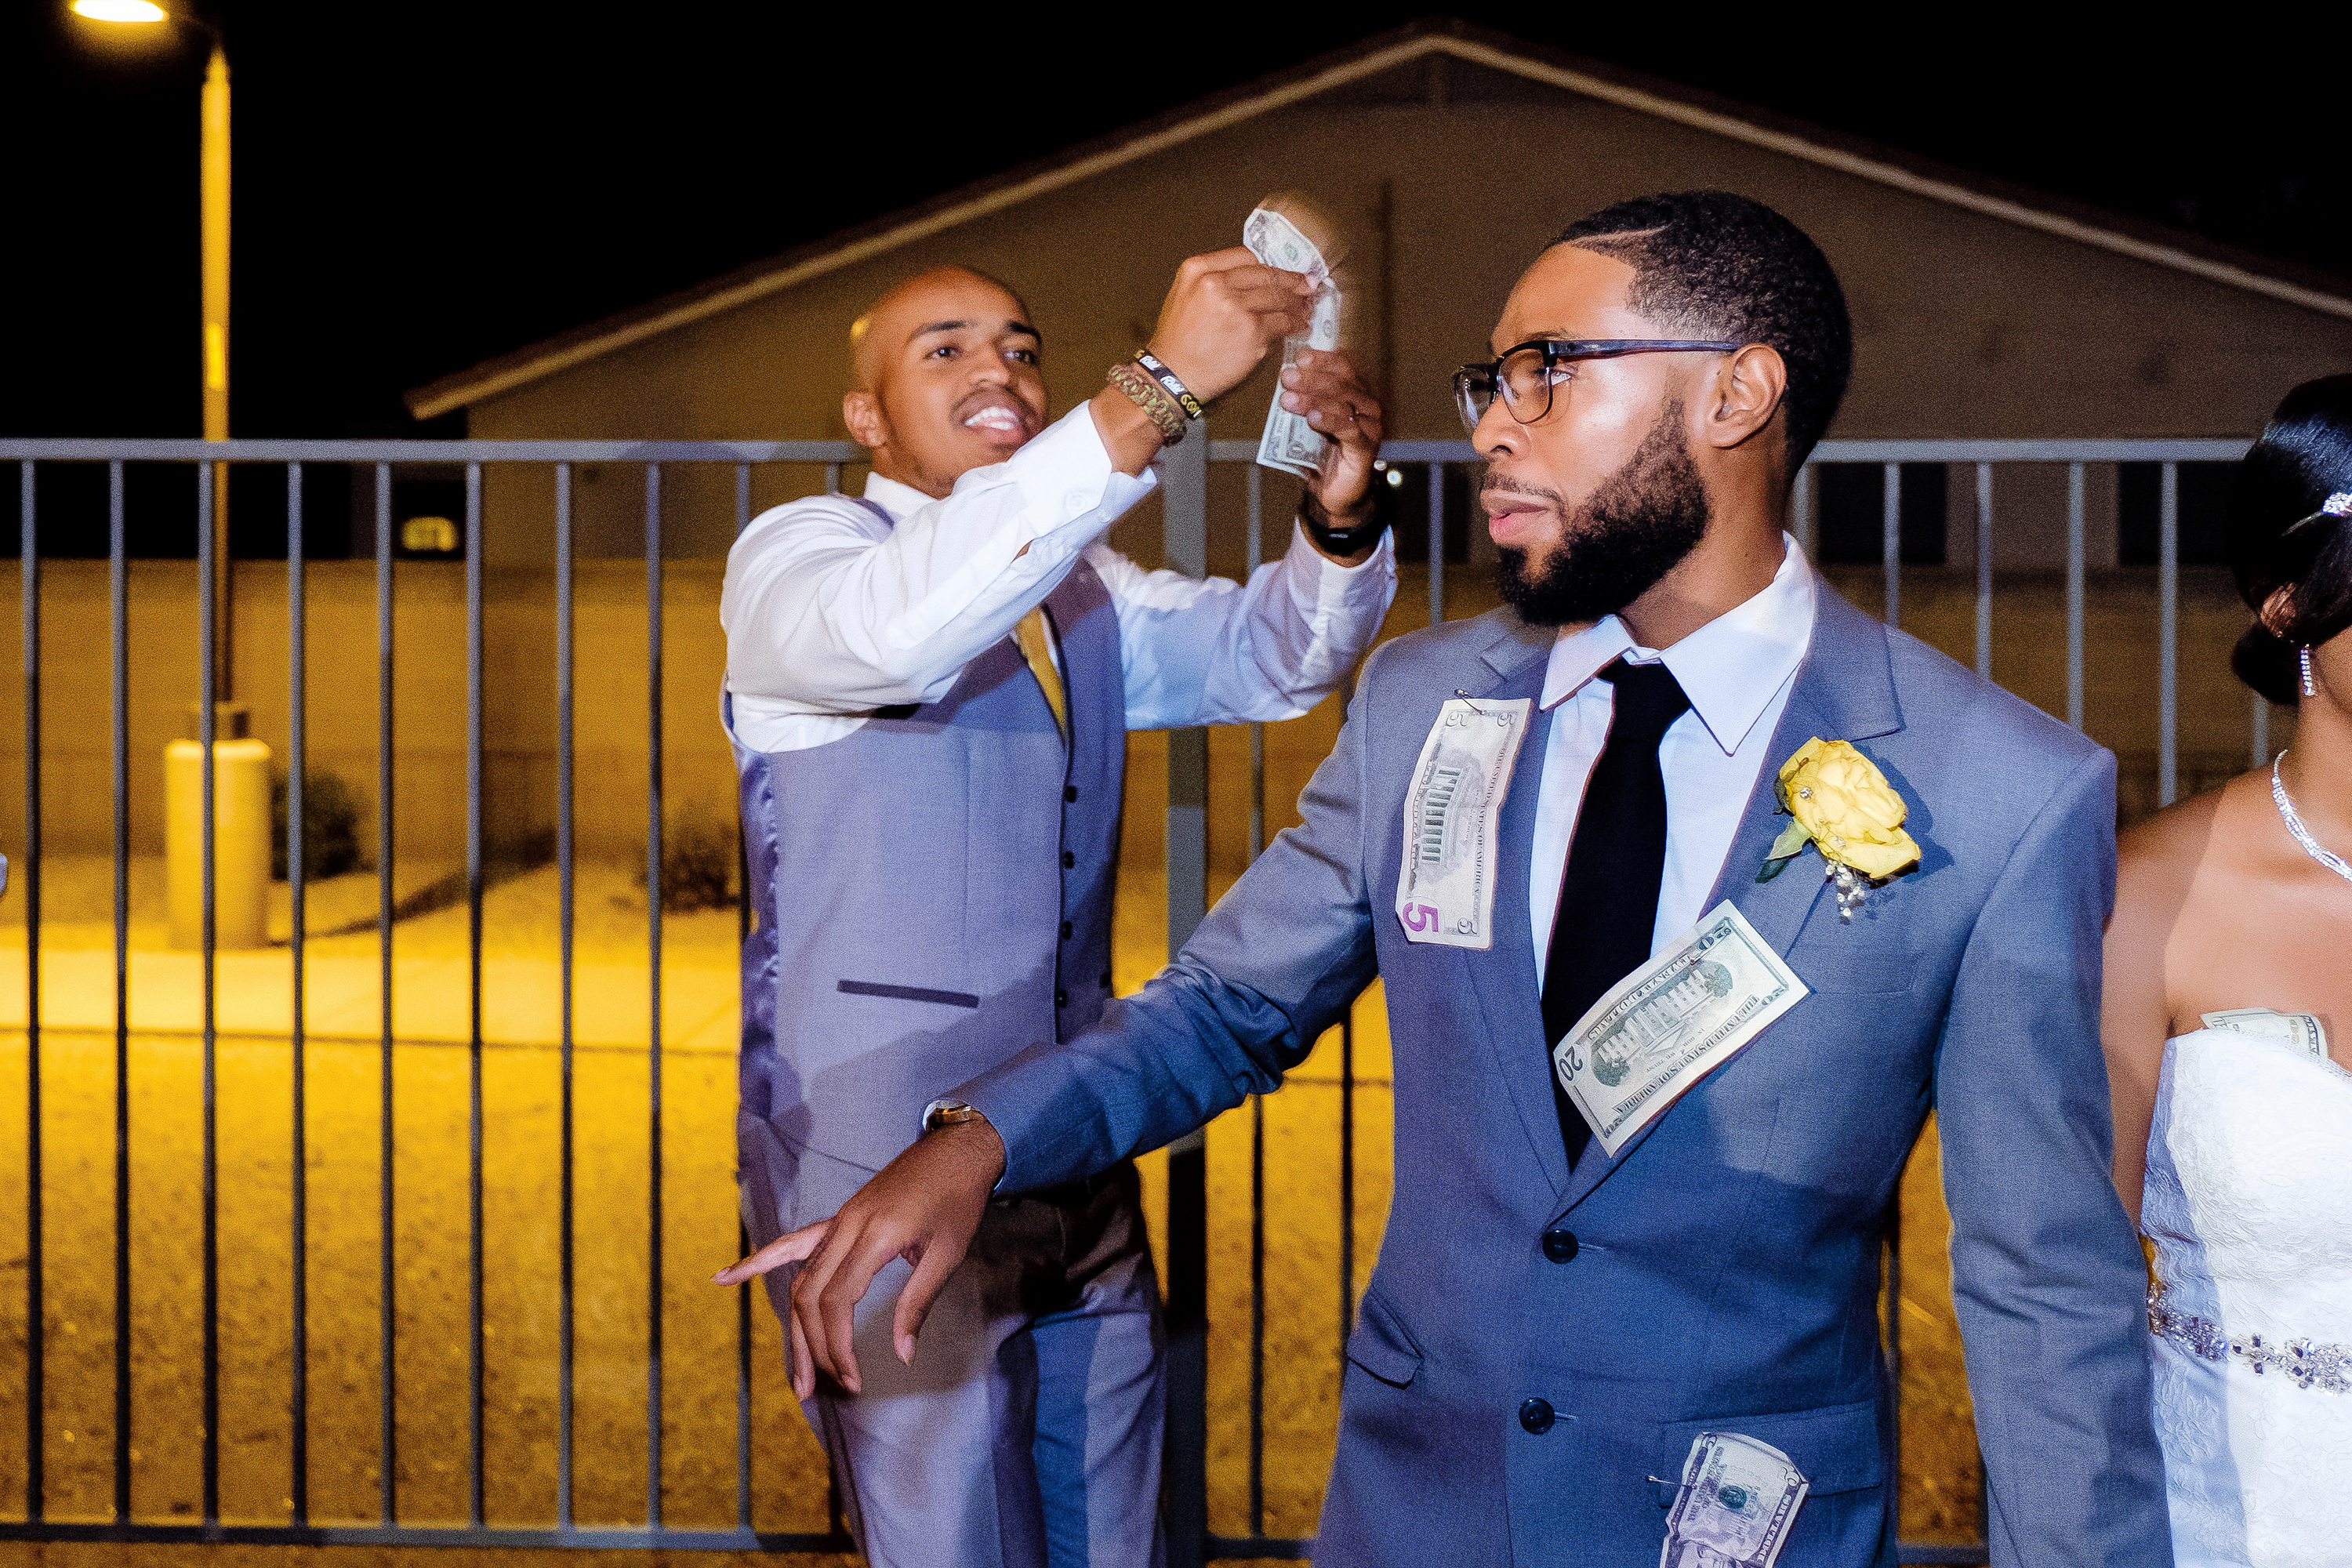 Money dance at a wedding